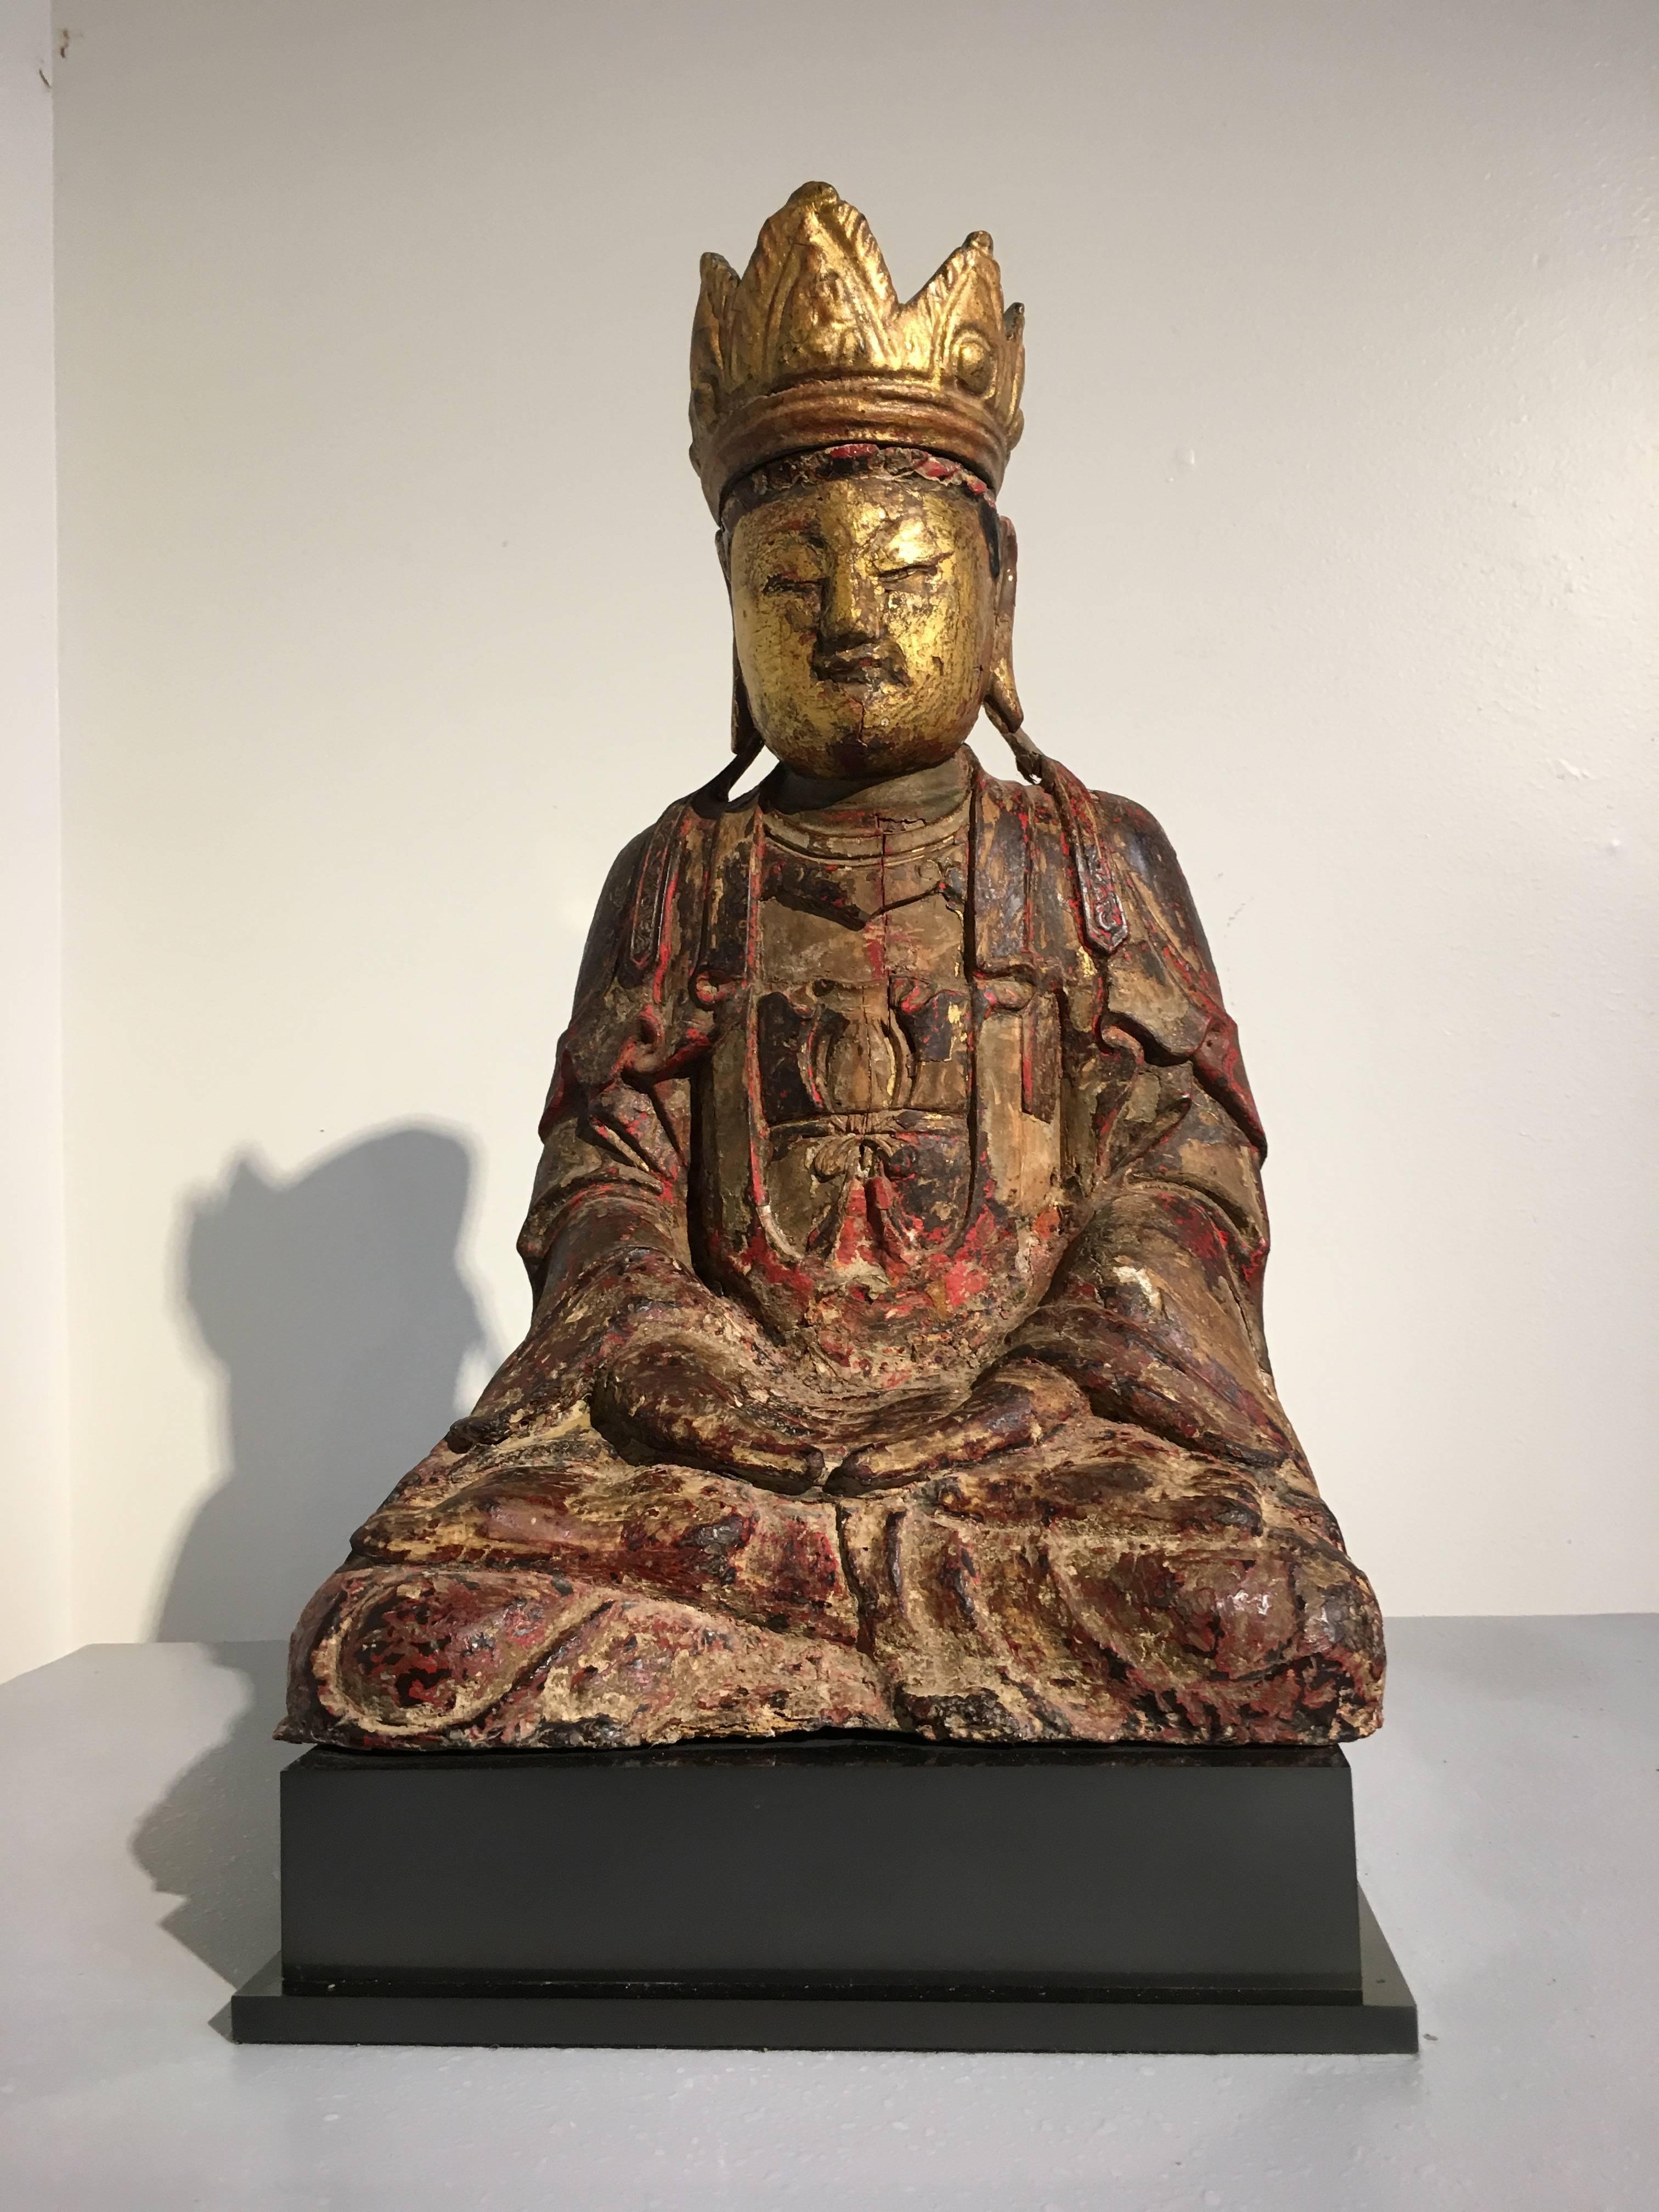 Une belle et sereine figure en bois sculpté de la dynastie chinoise Ming représentant le Bouddha Amitayus, le Bouddha de la longue vie, et une forme du Bouddha Amitabha. Il est assis en dhyanassana, vêtu de robes amples et orné d'une couronne à cinq